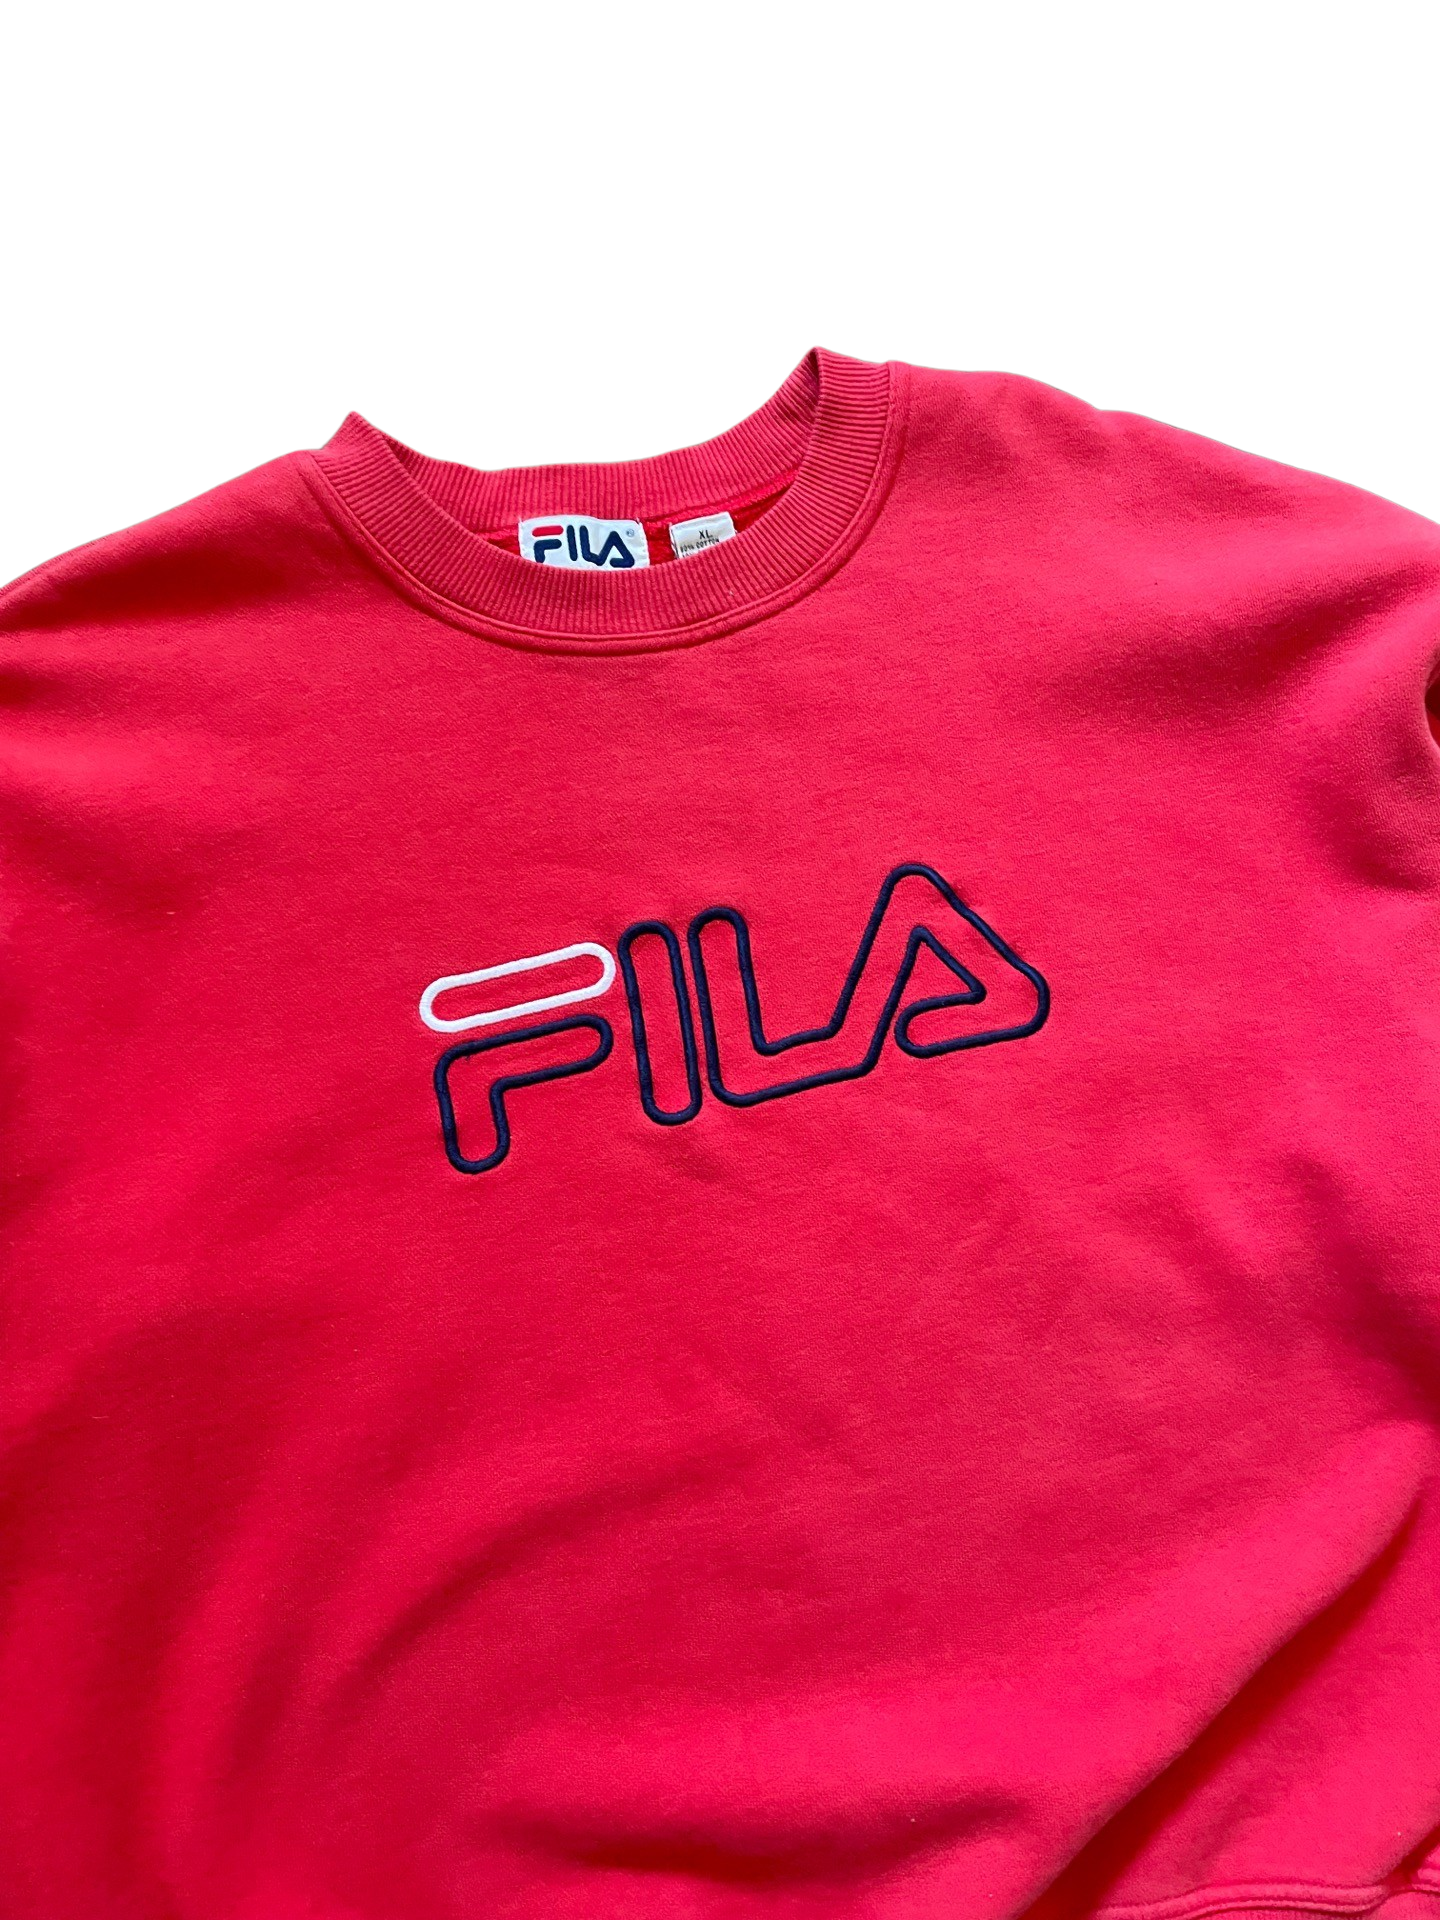 Vintage Fila Sweatshirt